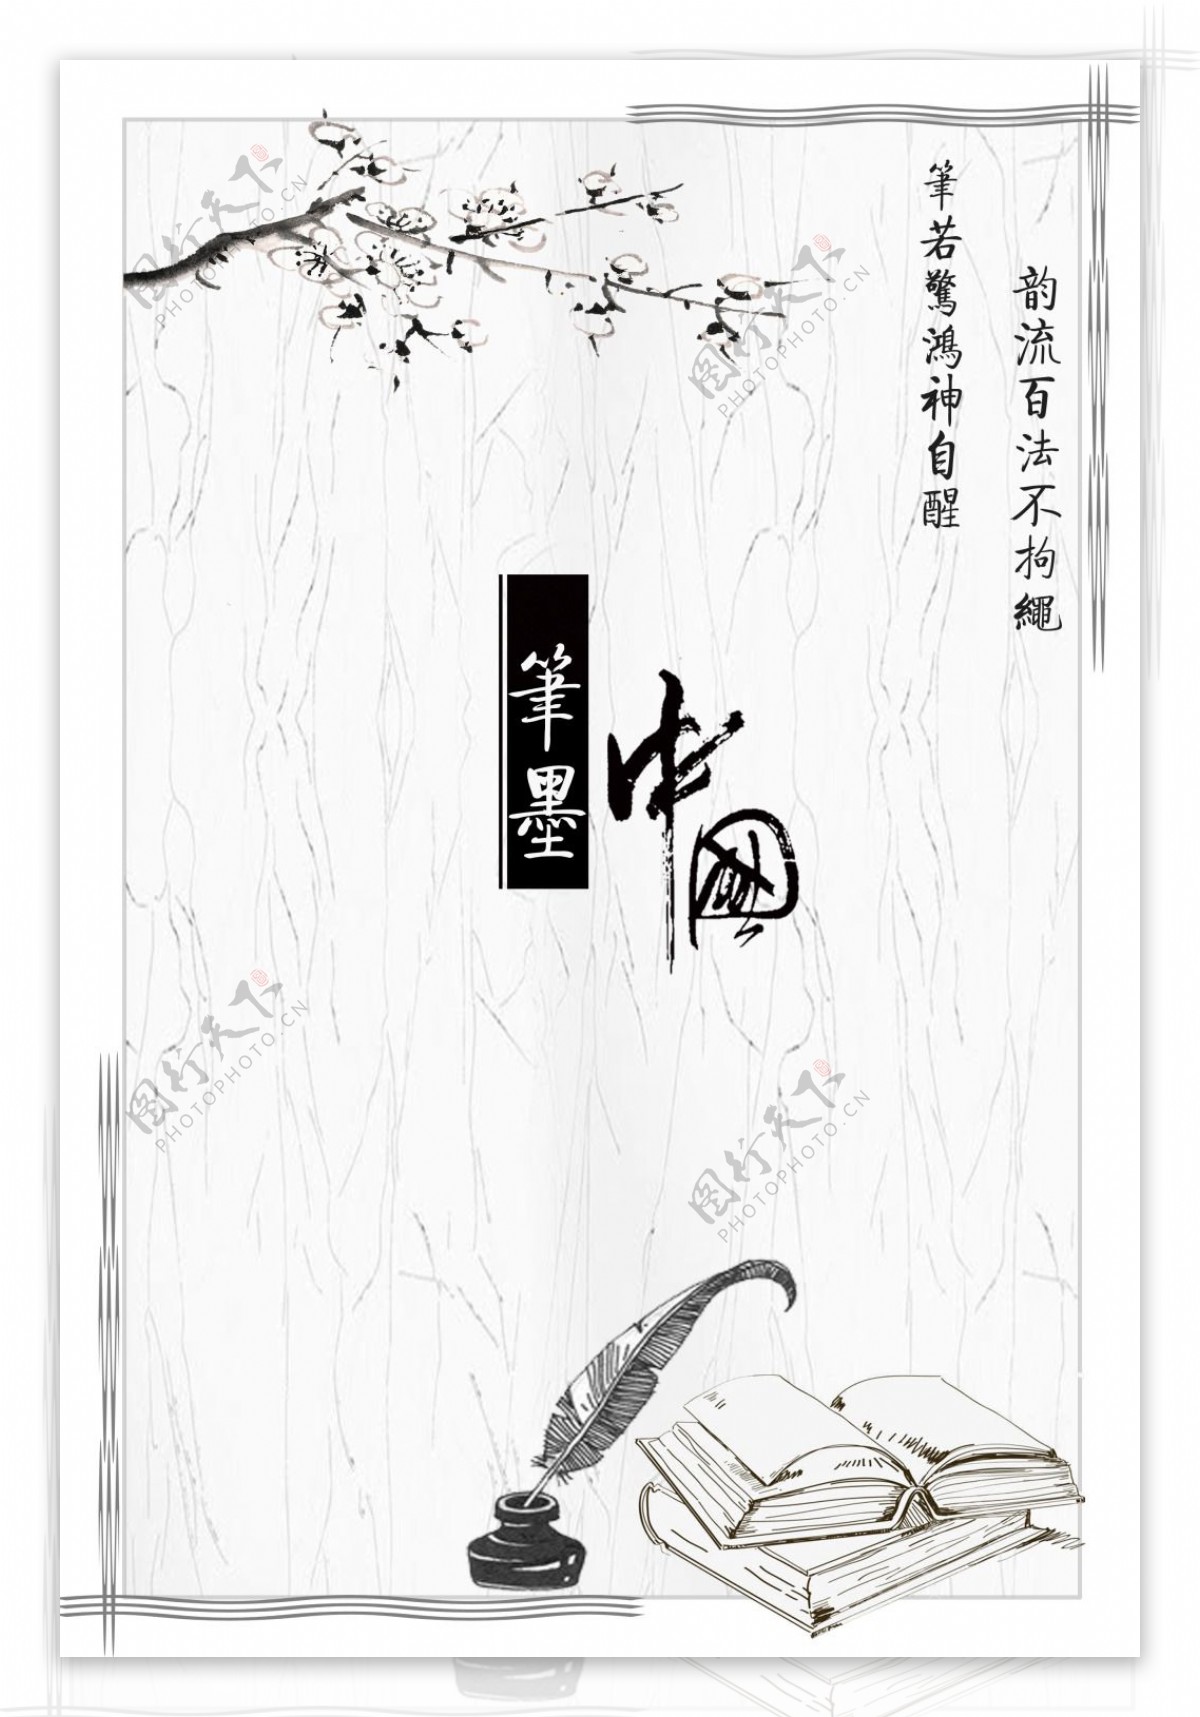 笔墨中国宣传海报